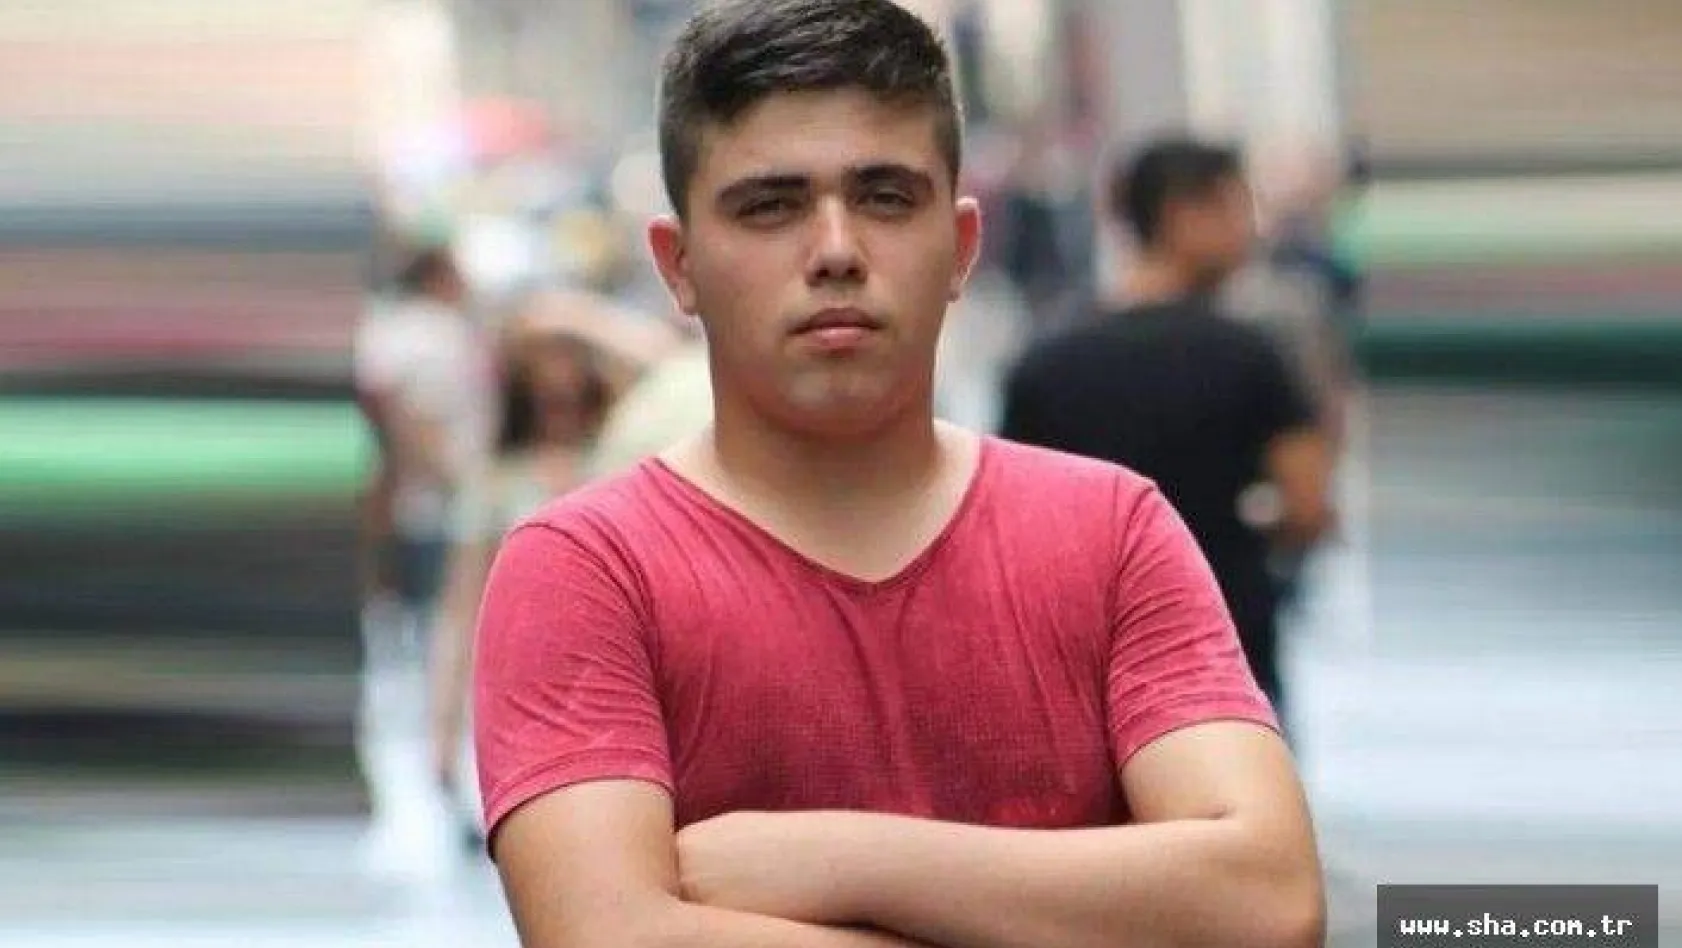 17 yaşında kalbinden vurulan Berkan'ın katili hâlâ yakalanamadı